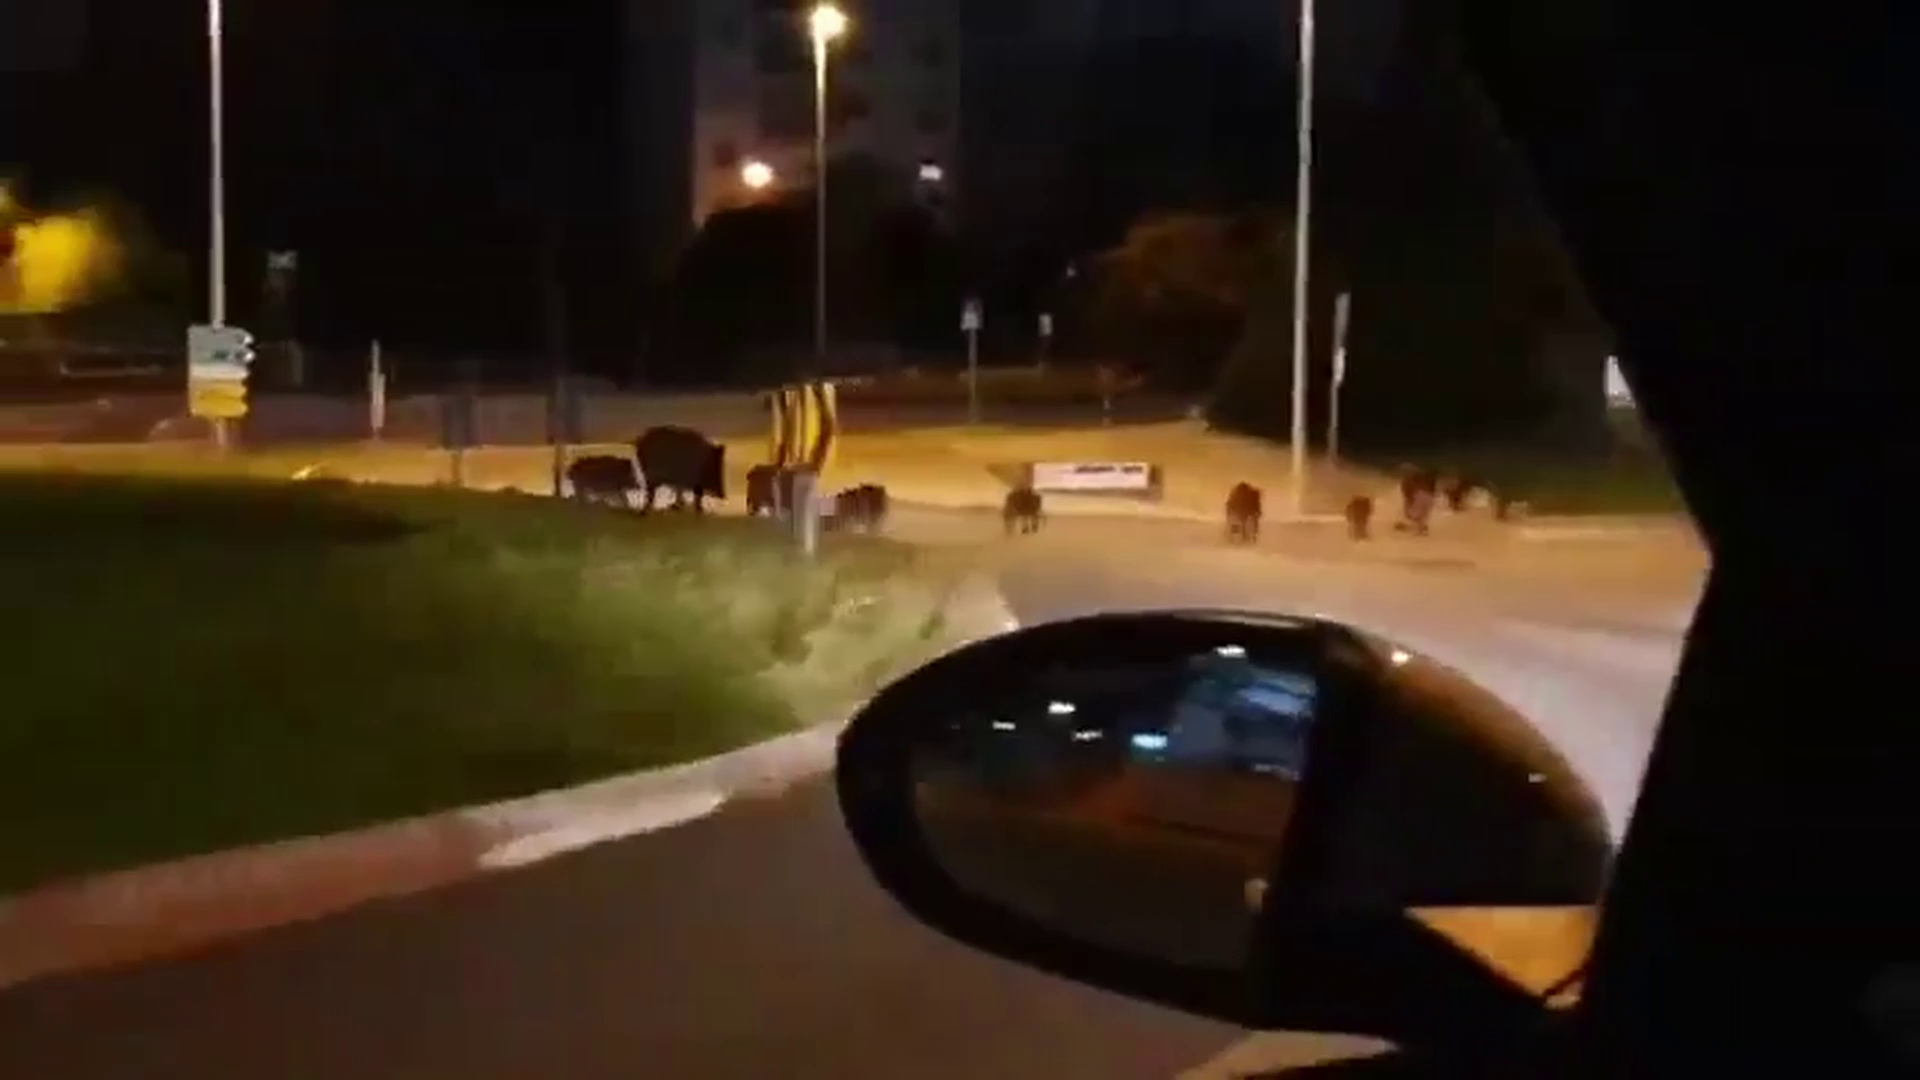 Divlje svinje u šetnji gradom